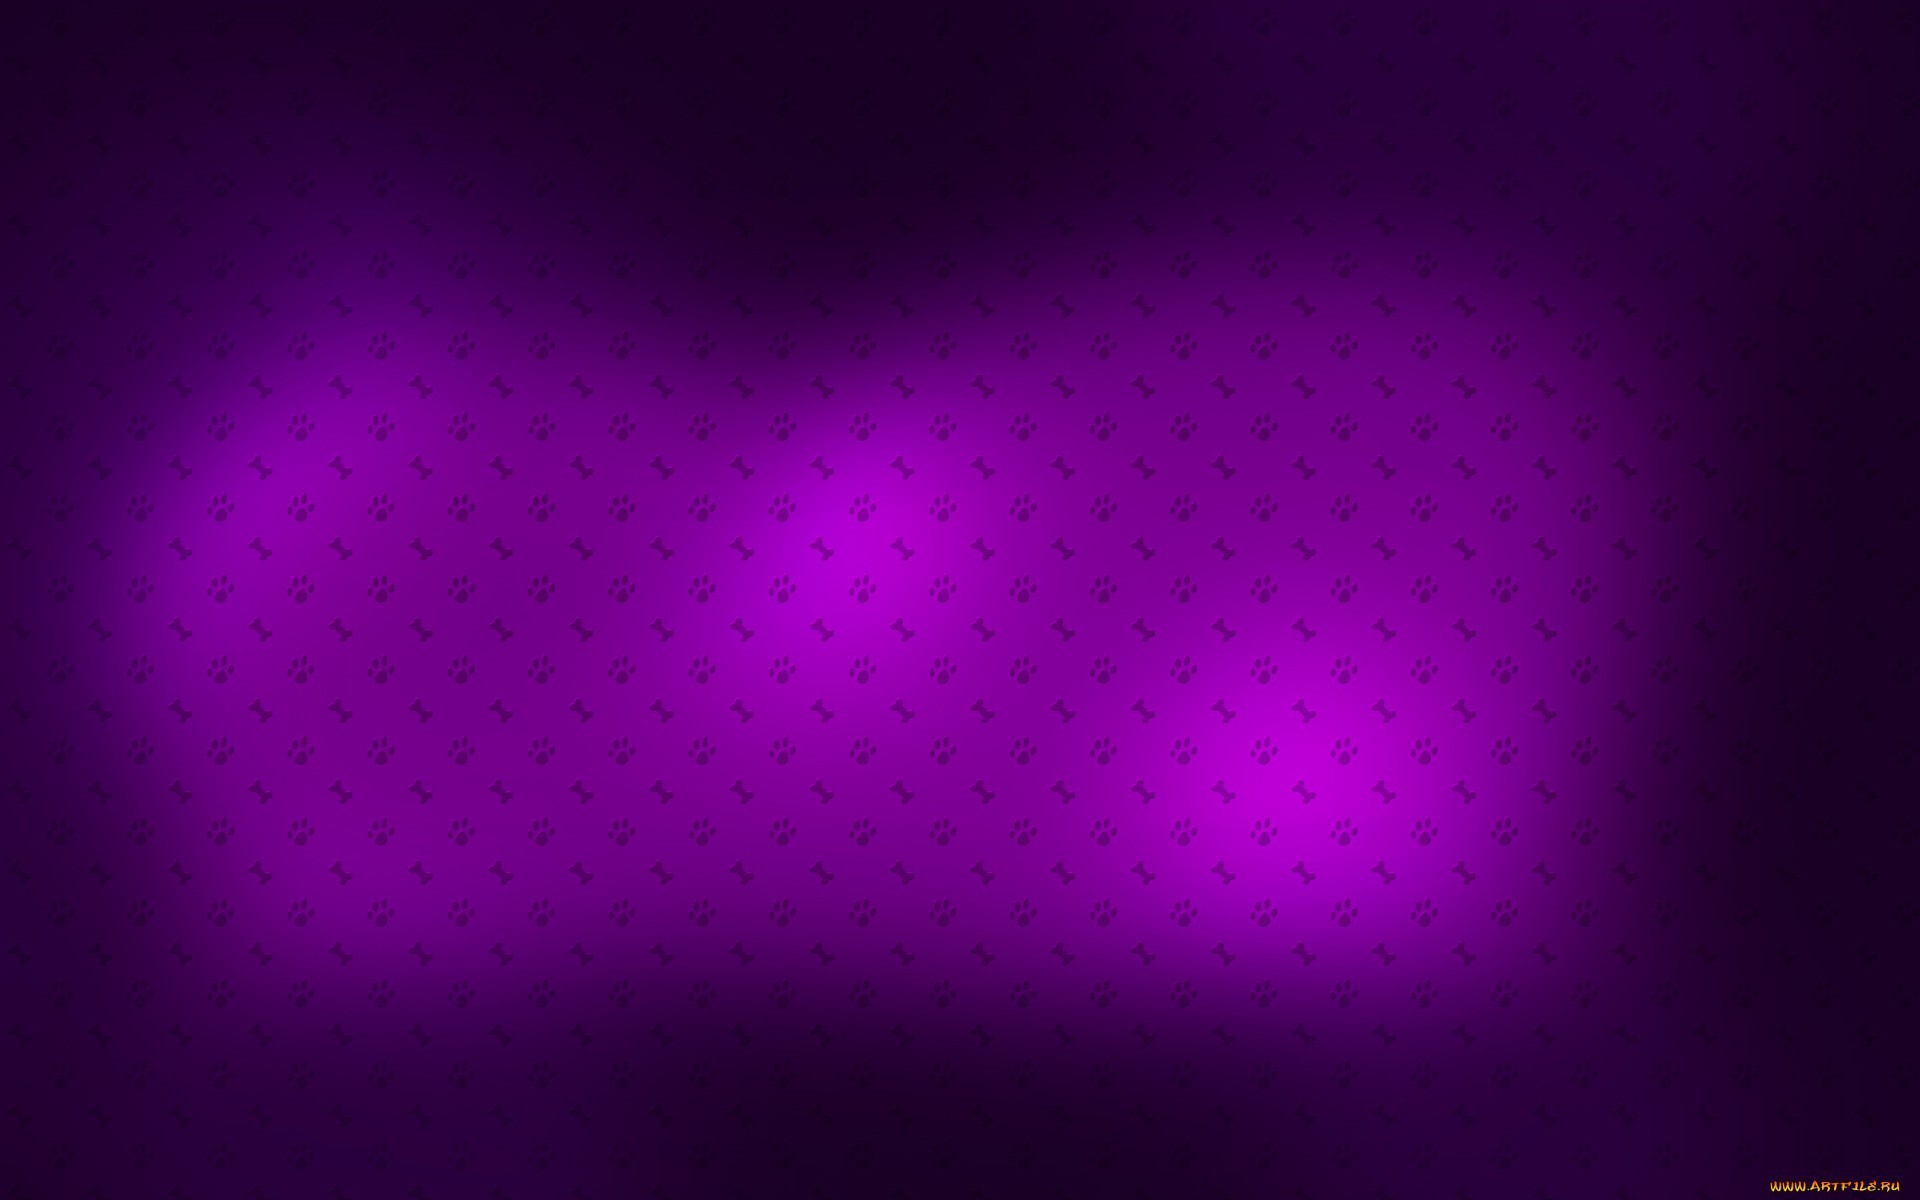 Free download wallpaper Background, Violet on your PC desktop